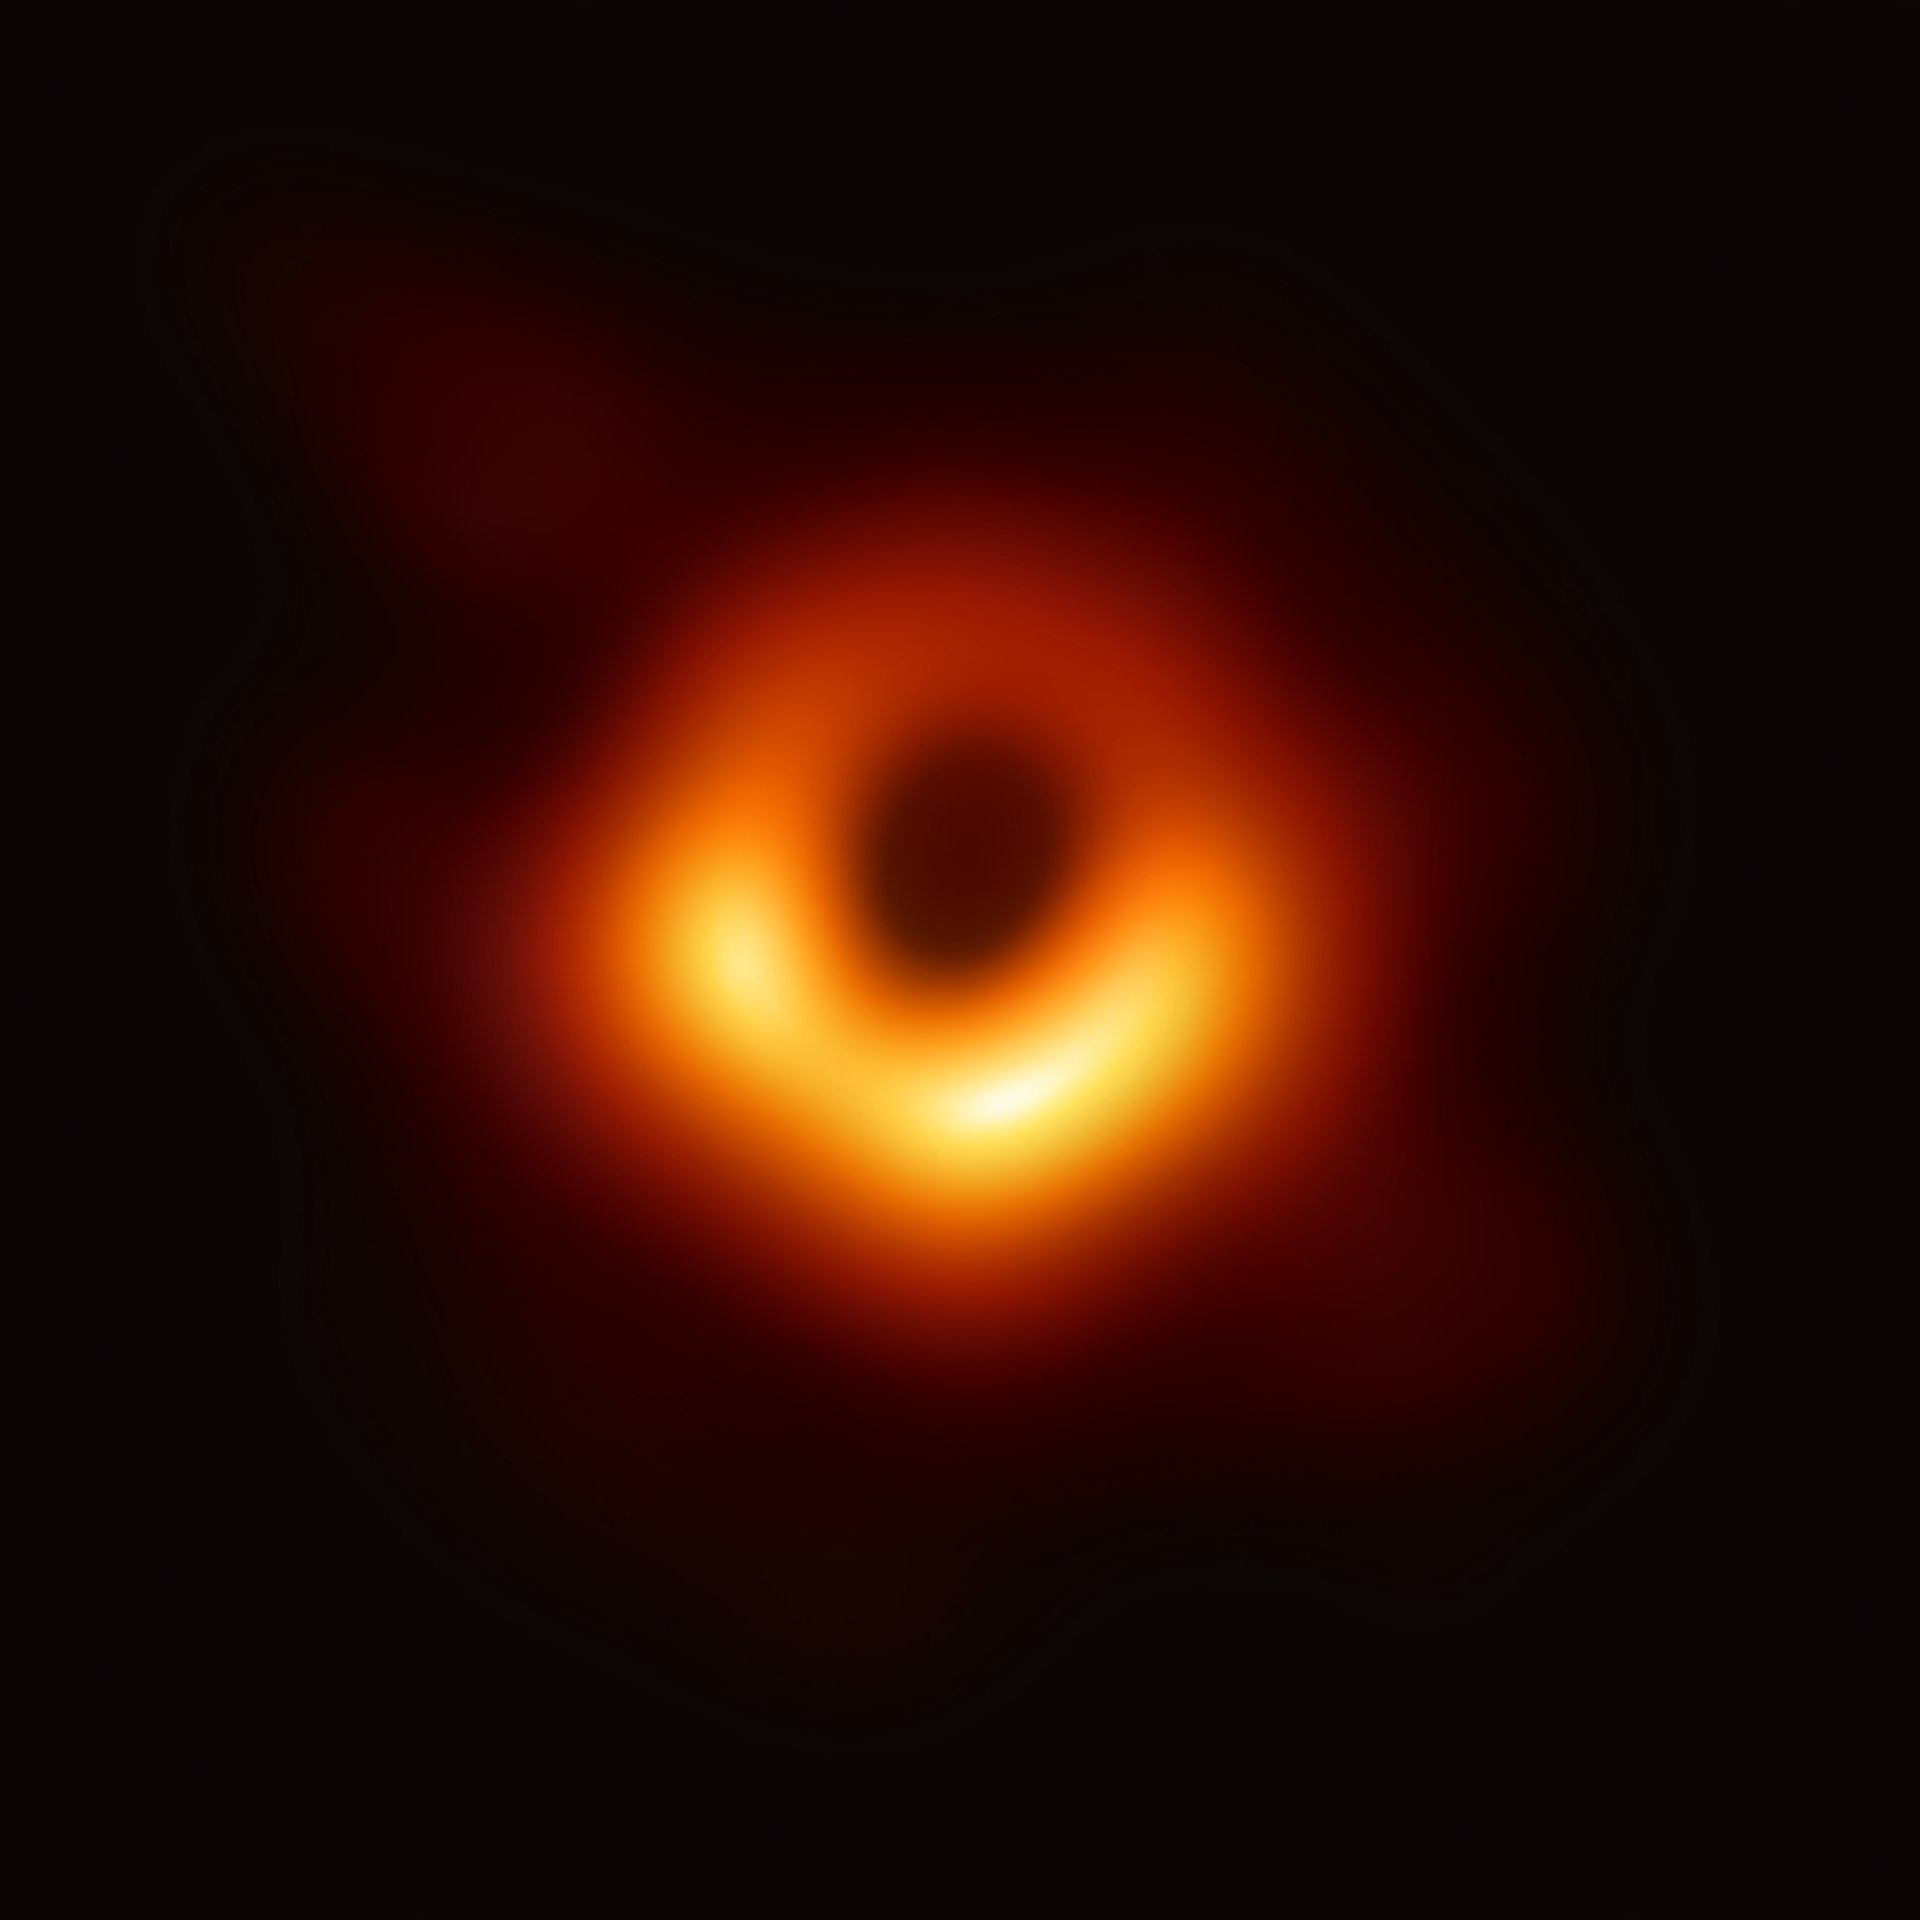 Buracos negros: vilões do universo ou distorção natural?